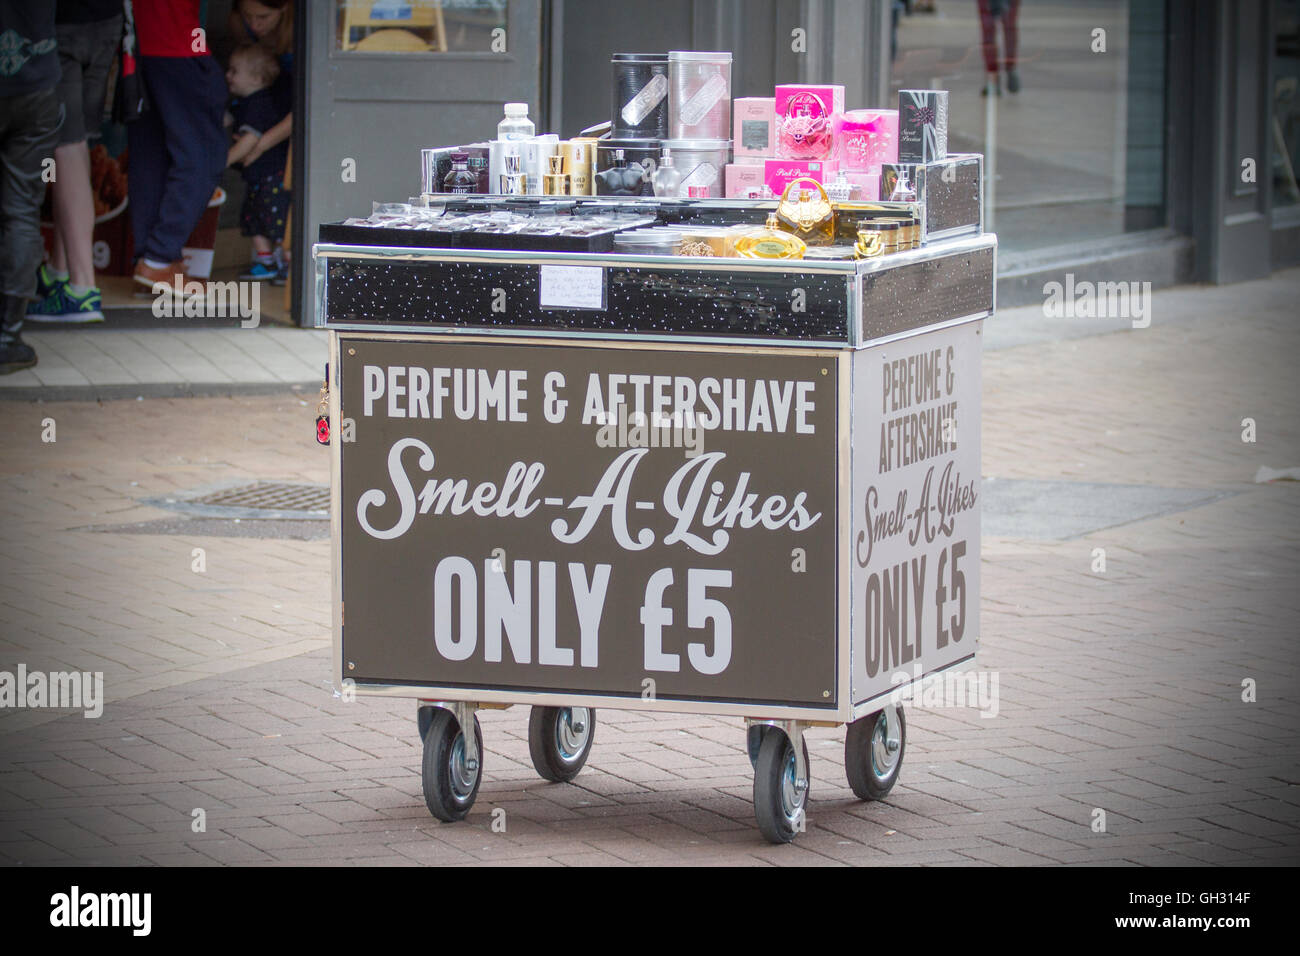 Chariot Mobile de vente et l'après-rasage parfum odeur-a-aime seulement €5  Photo Stock - Alamy